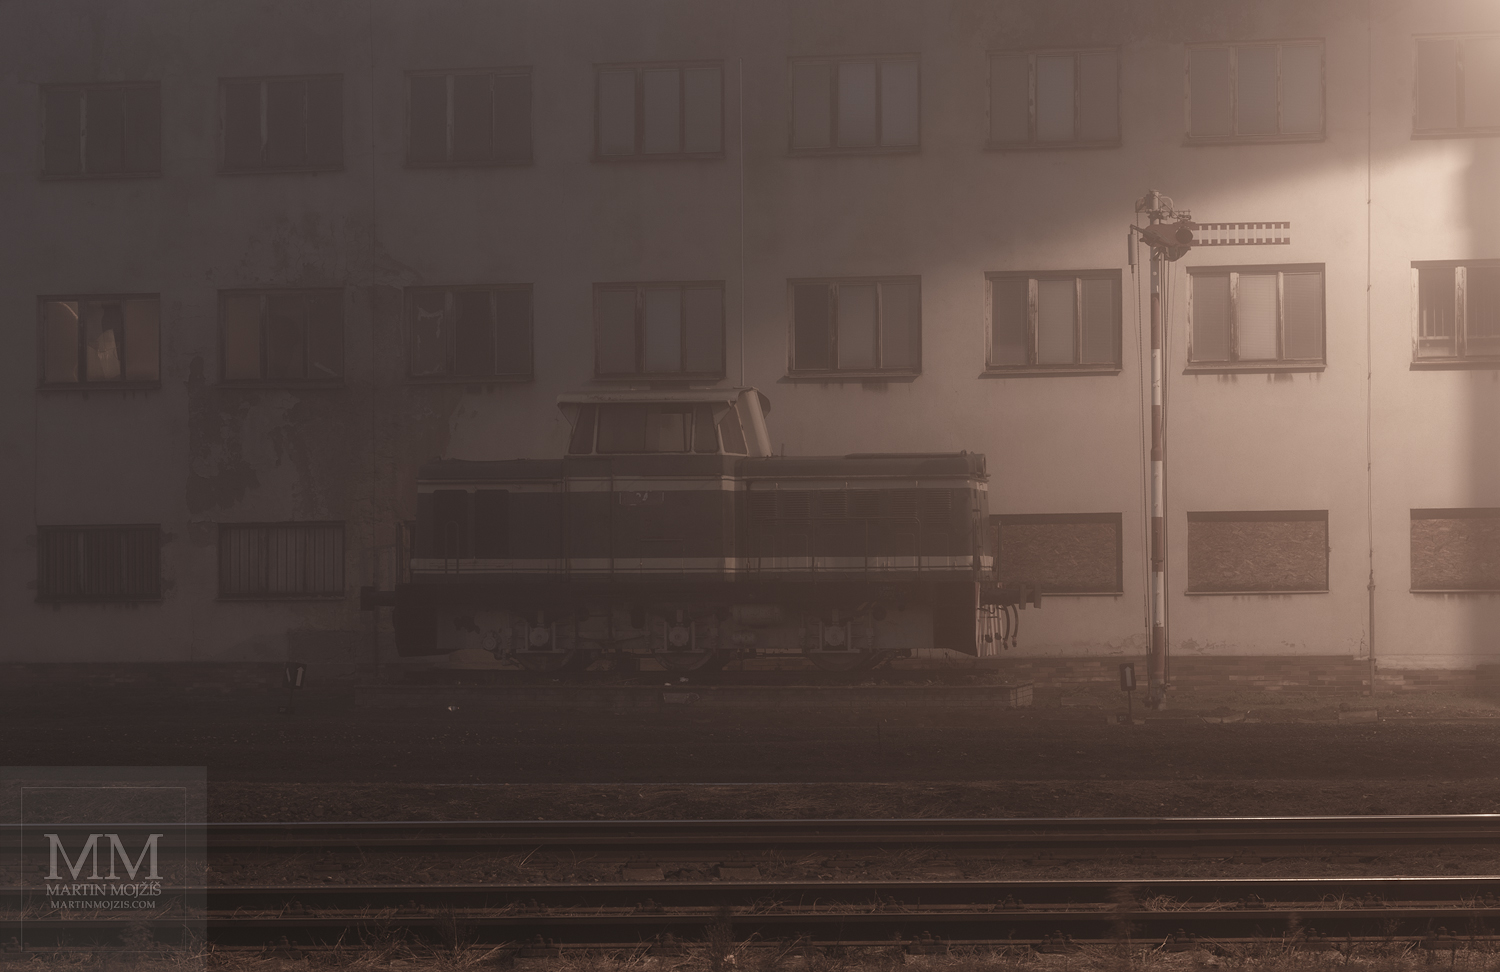 Velkoformátová umělecká fotografie lokomotivy na nádraží v mlze. Martin Mojžíš.